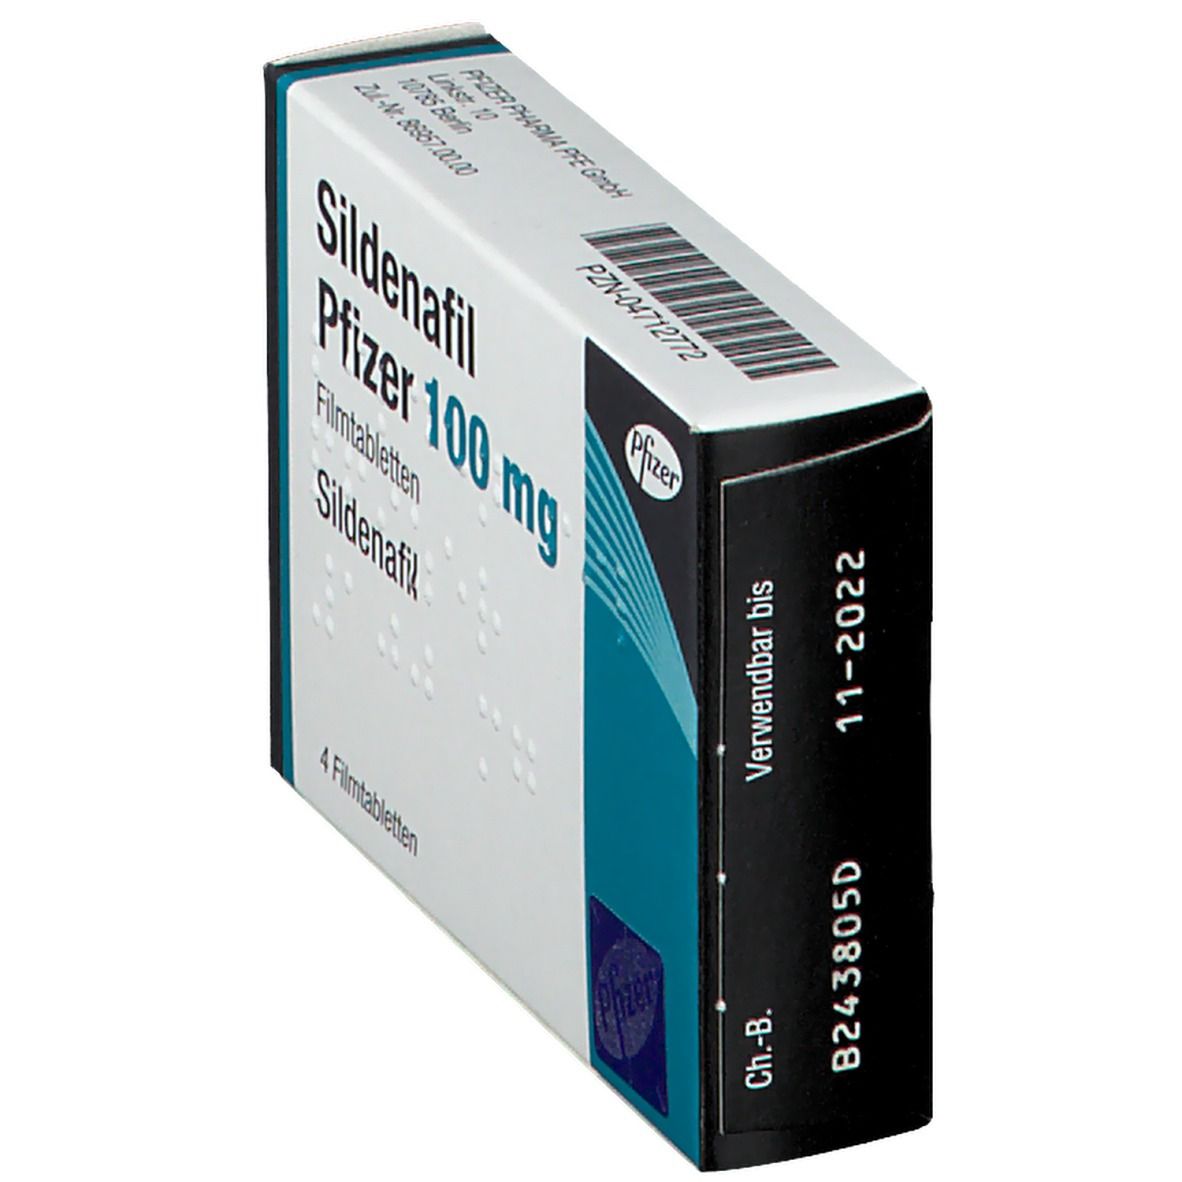 Sildenafil Pfizer 100 mg